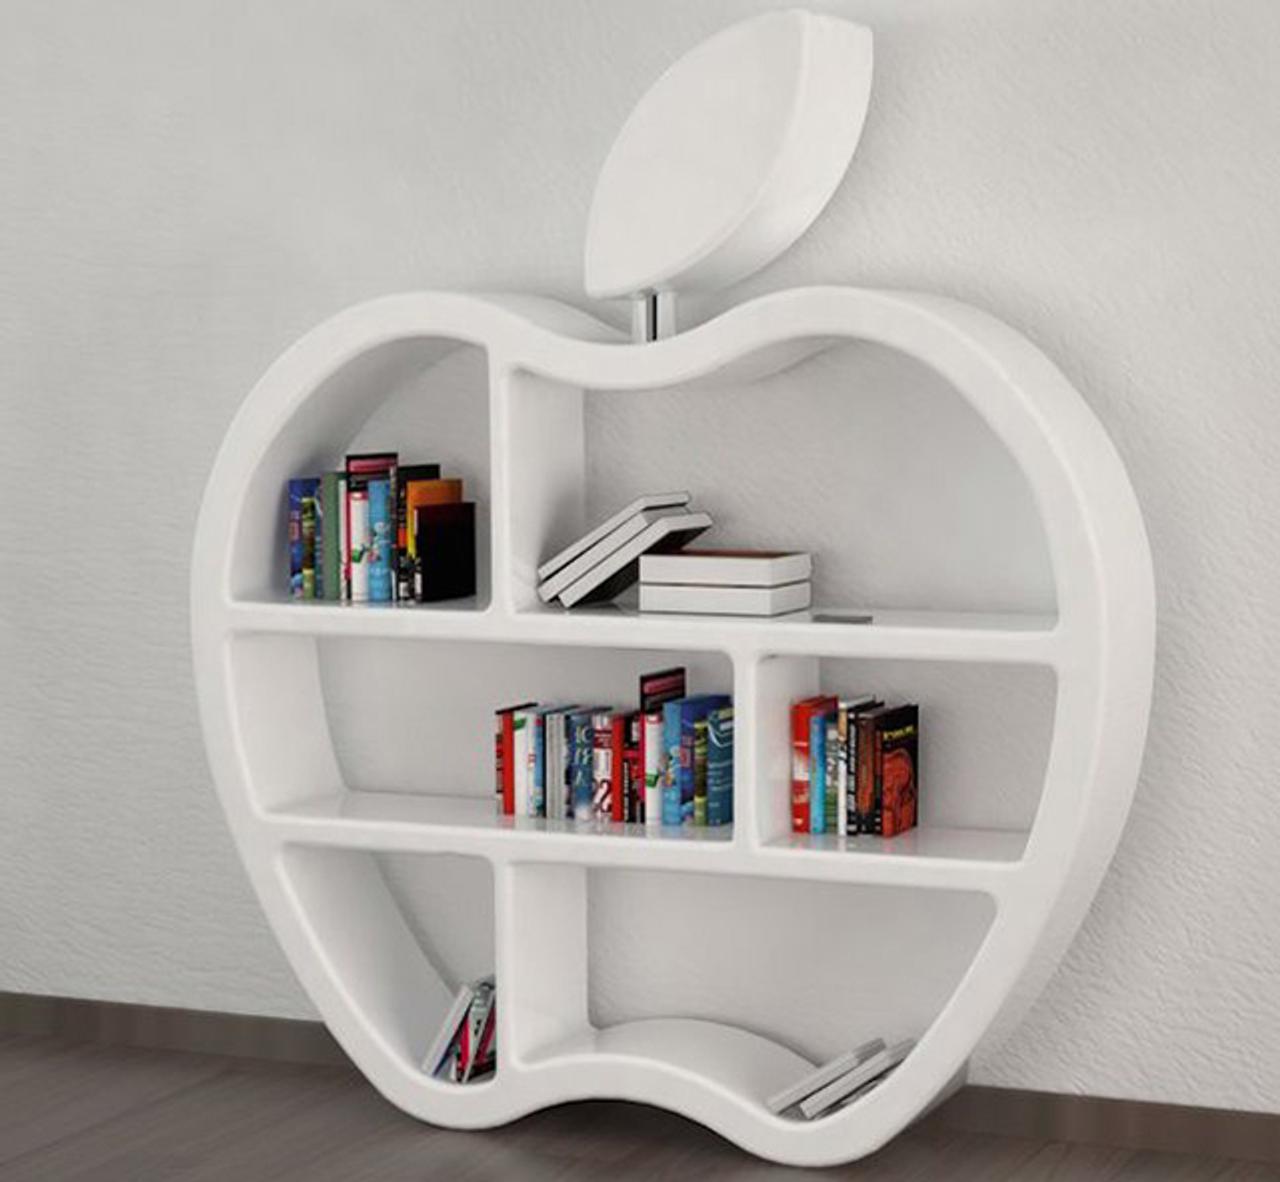 アップル大好きな人なら欲しくなるアップルロゴの本棚